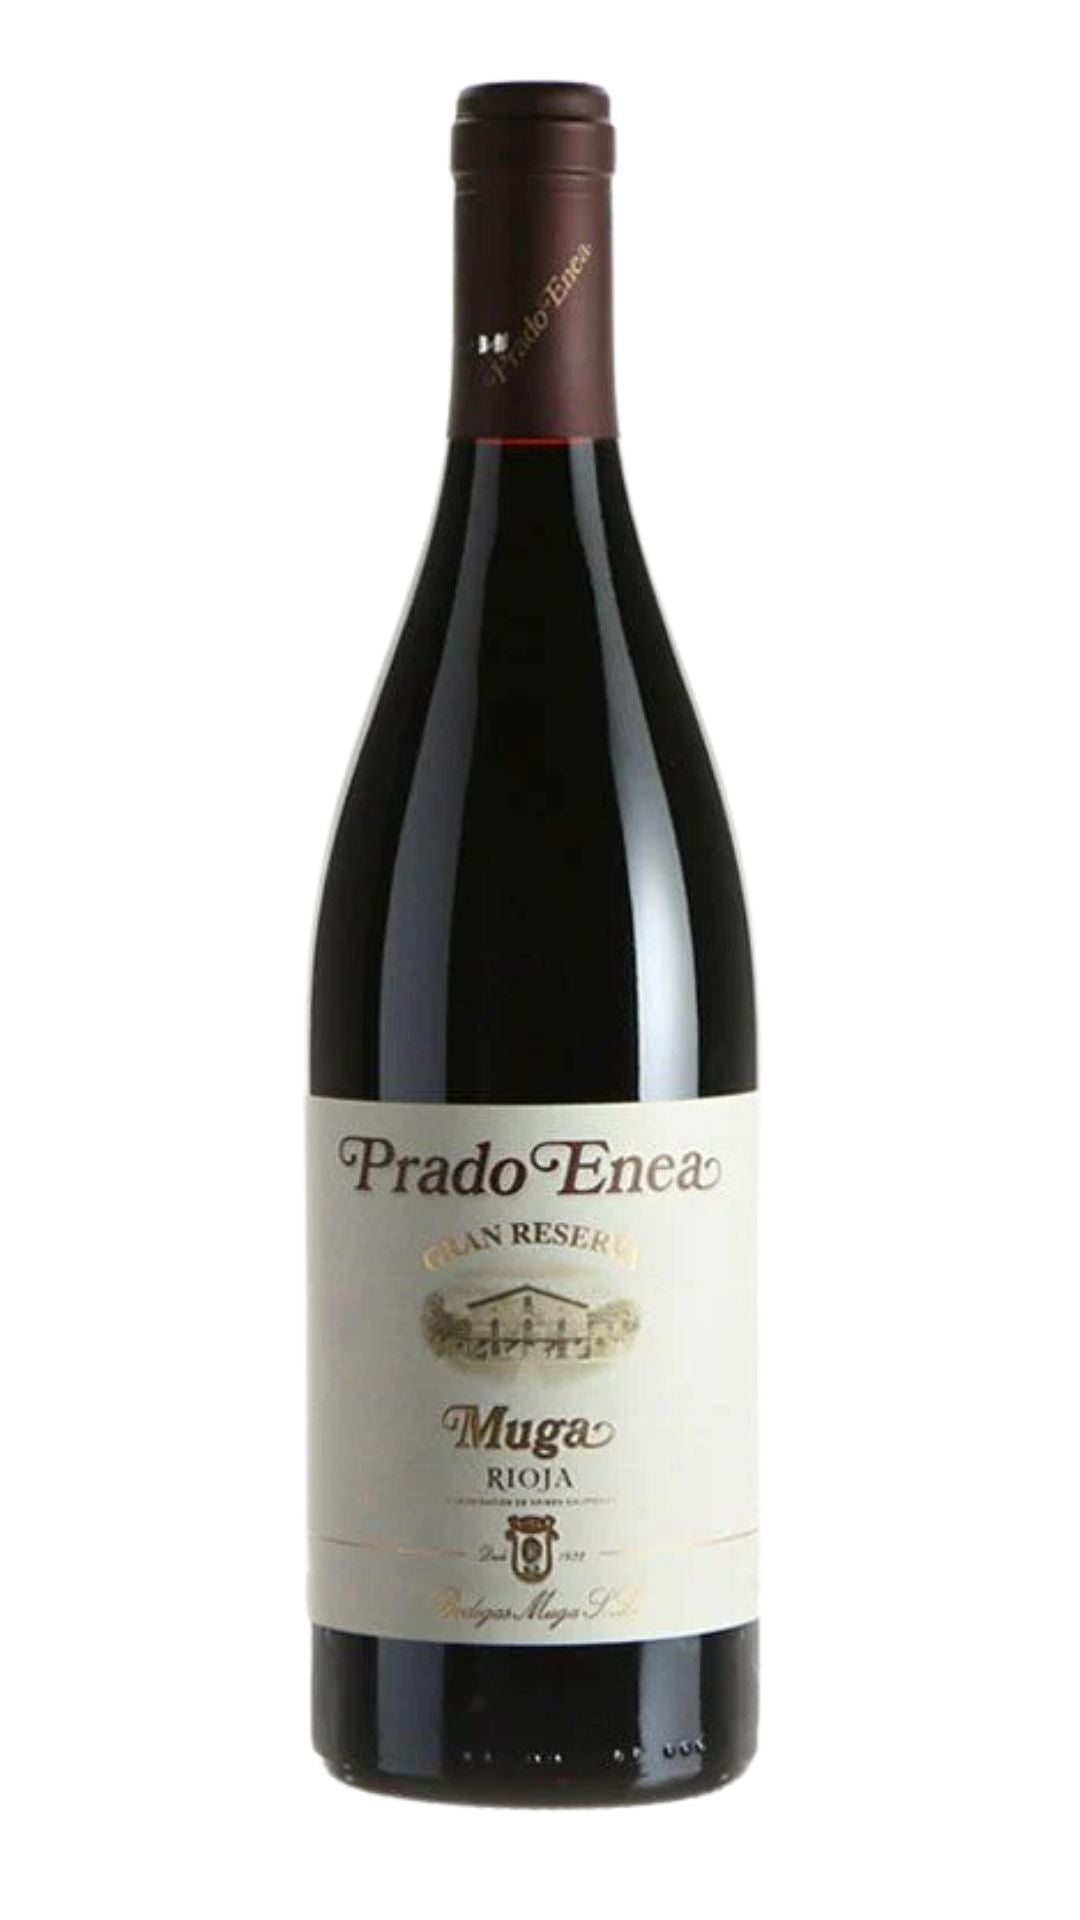 2015 Muga "Prado Enea" Gran Reserva Rioja - Harvest Wine Shop